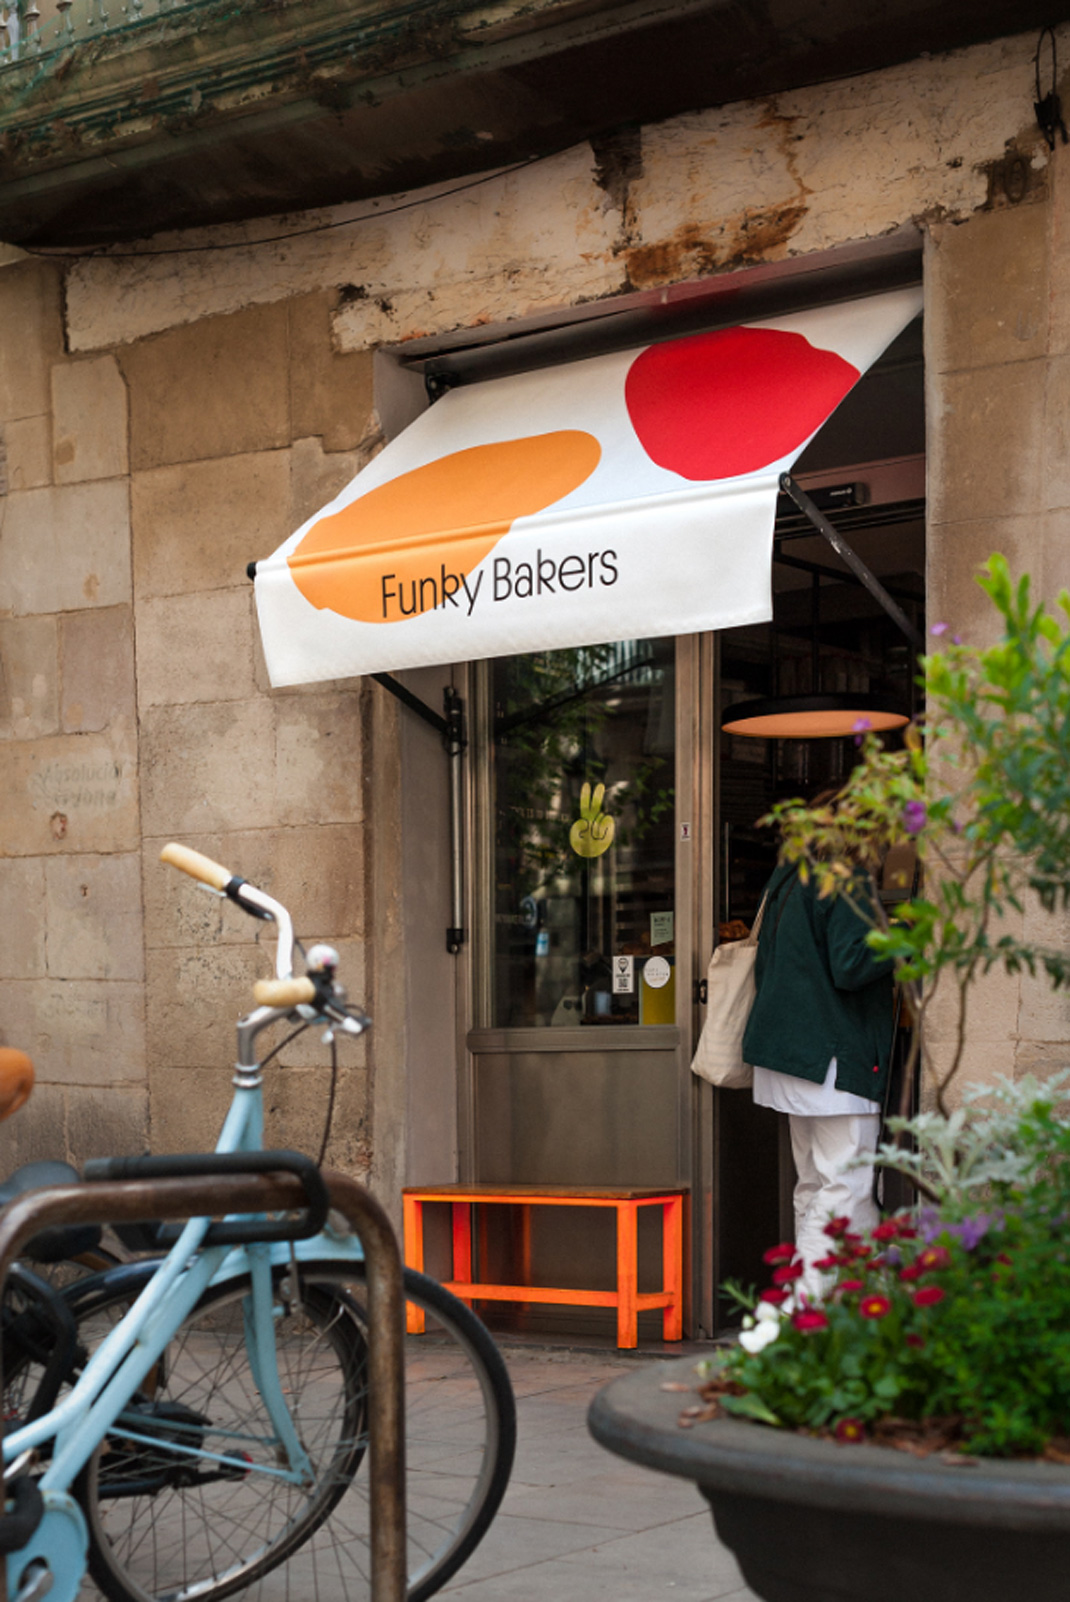 时髦面包店Funky Bakers 西班牙 面包店 包装设计 logo设计 vi设计 空间设计